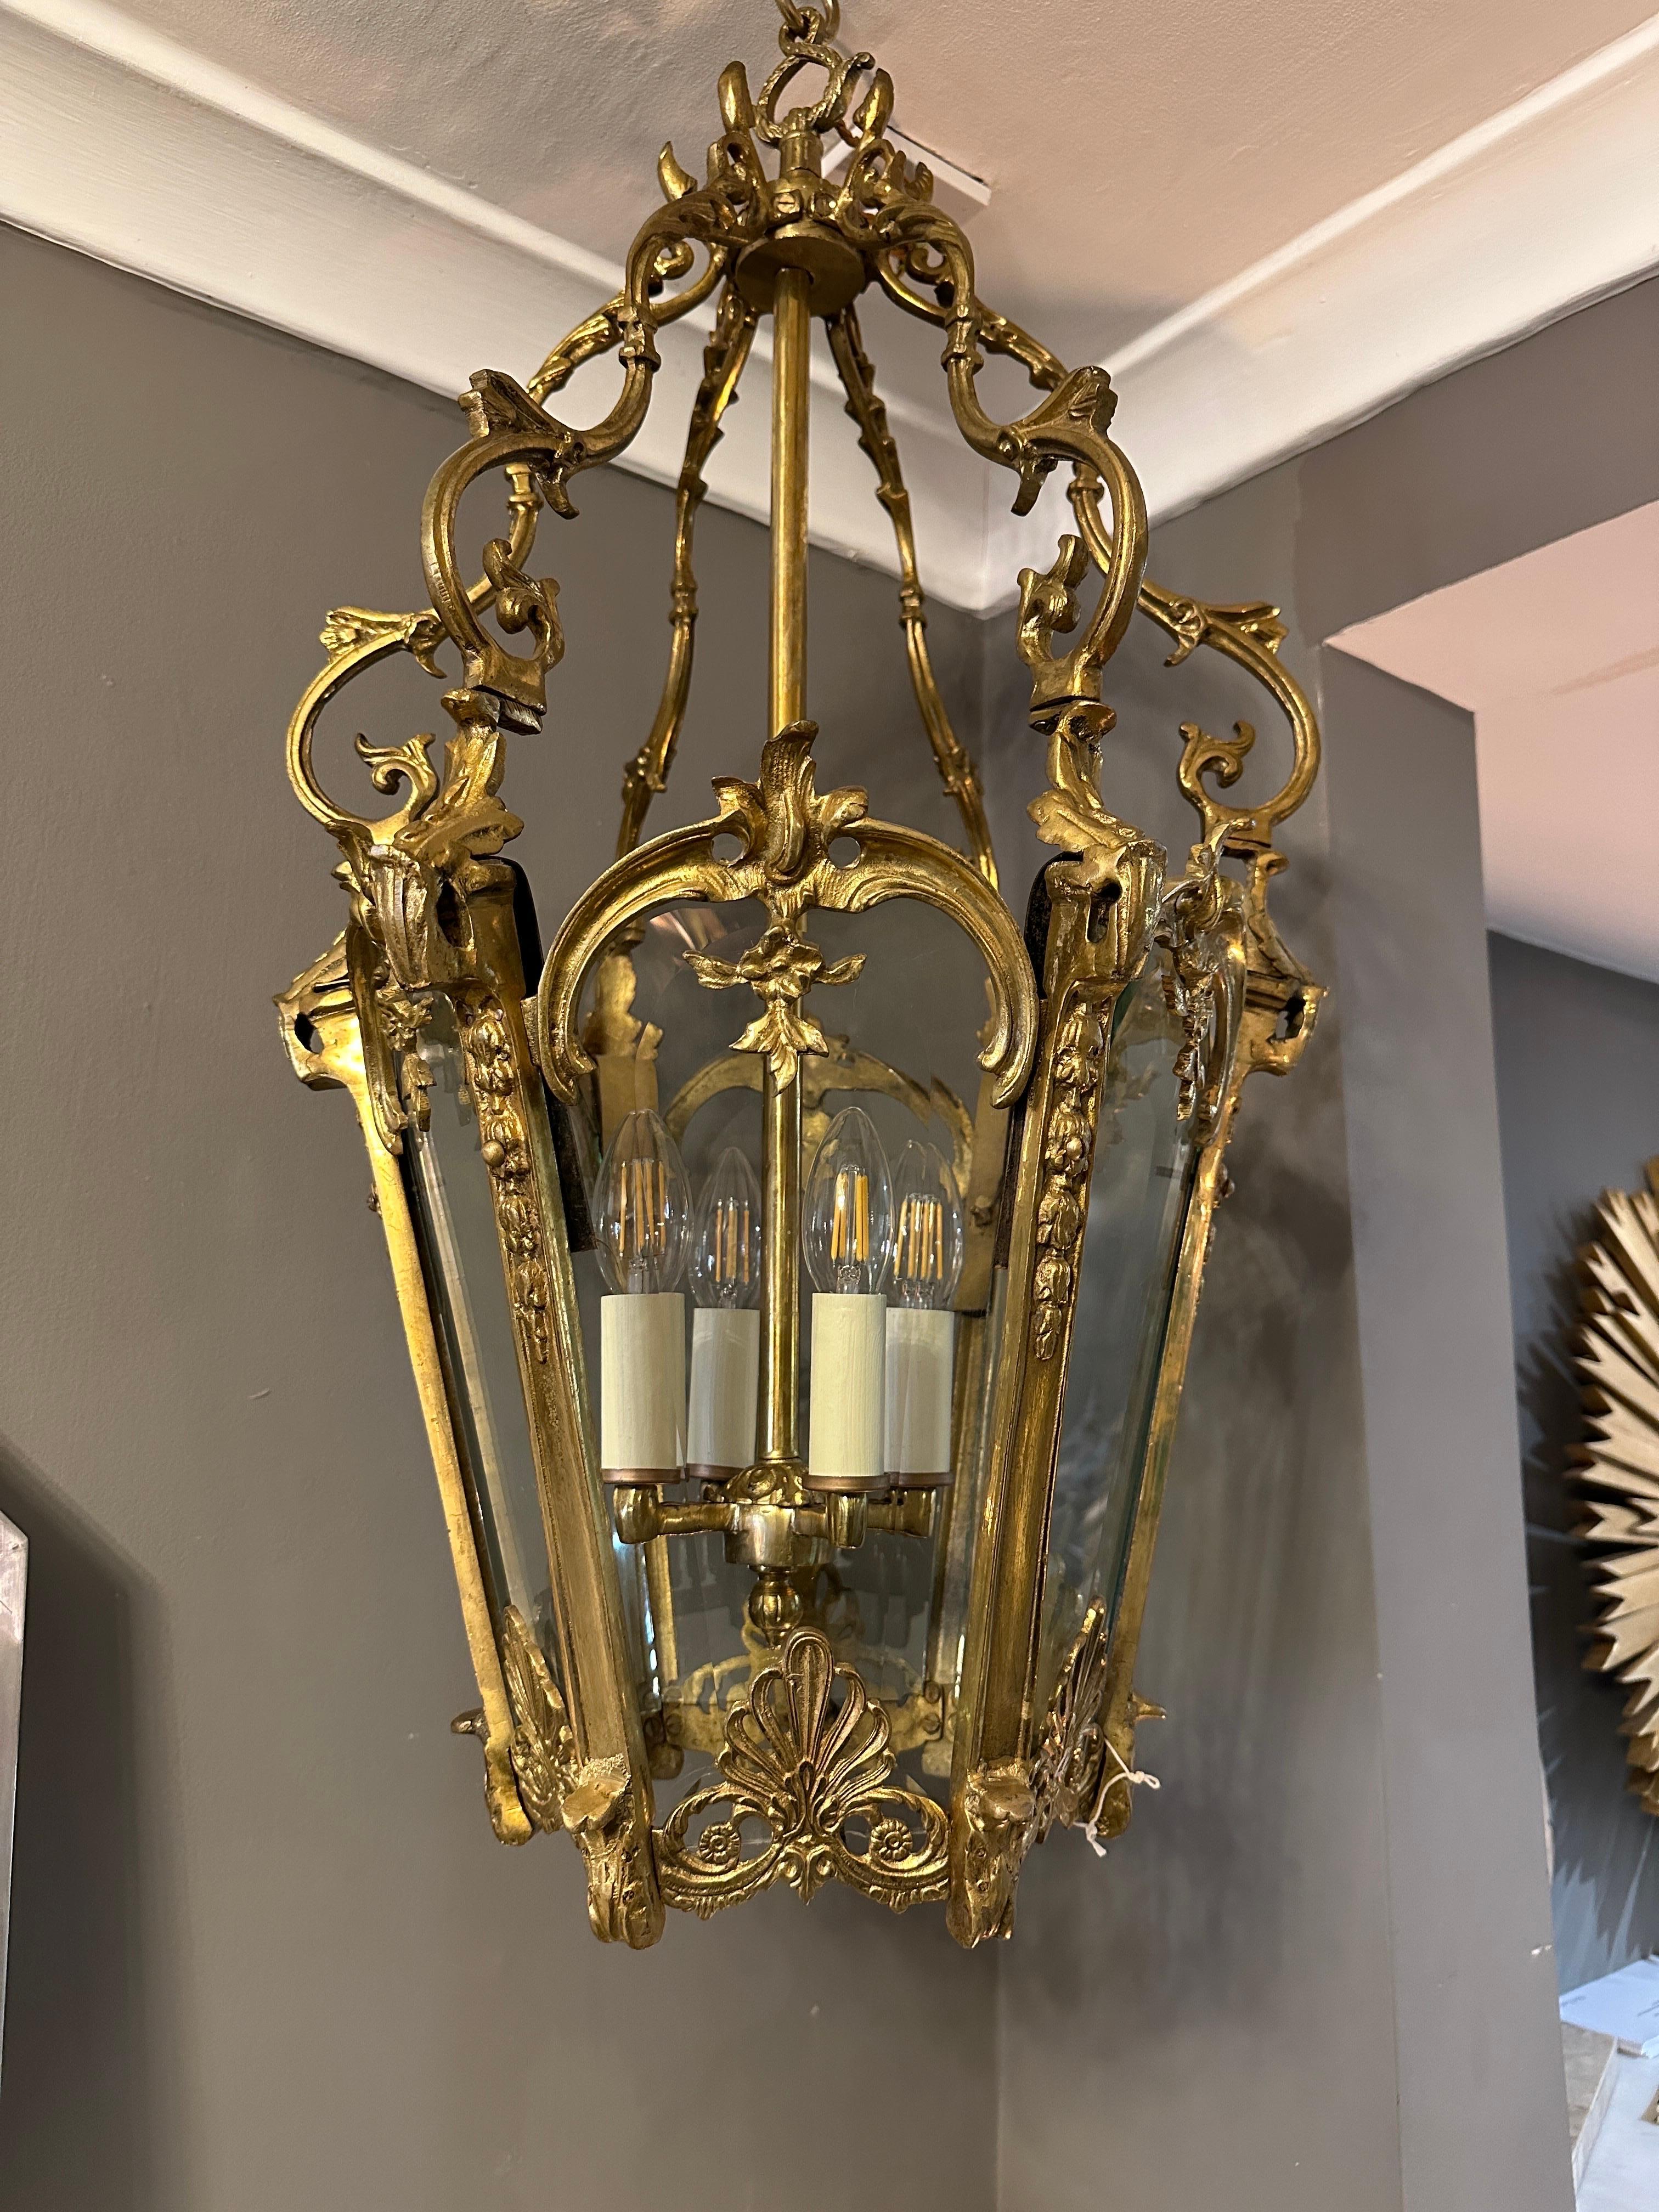 Grande lanterne rococo française ancienne de style Louis XV en bronze doré avec six panneaux en verre biseauté taillé, un baldaquin orné d'acanthes et de feuillages. Les panneaux de verre sont encadrés d'un rinceau et de fleurs en C.I.C. et d'un